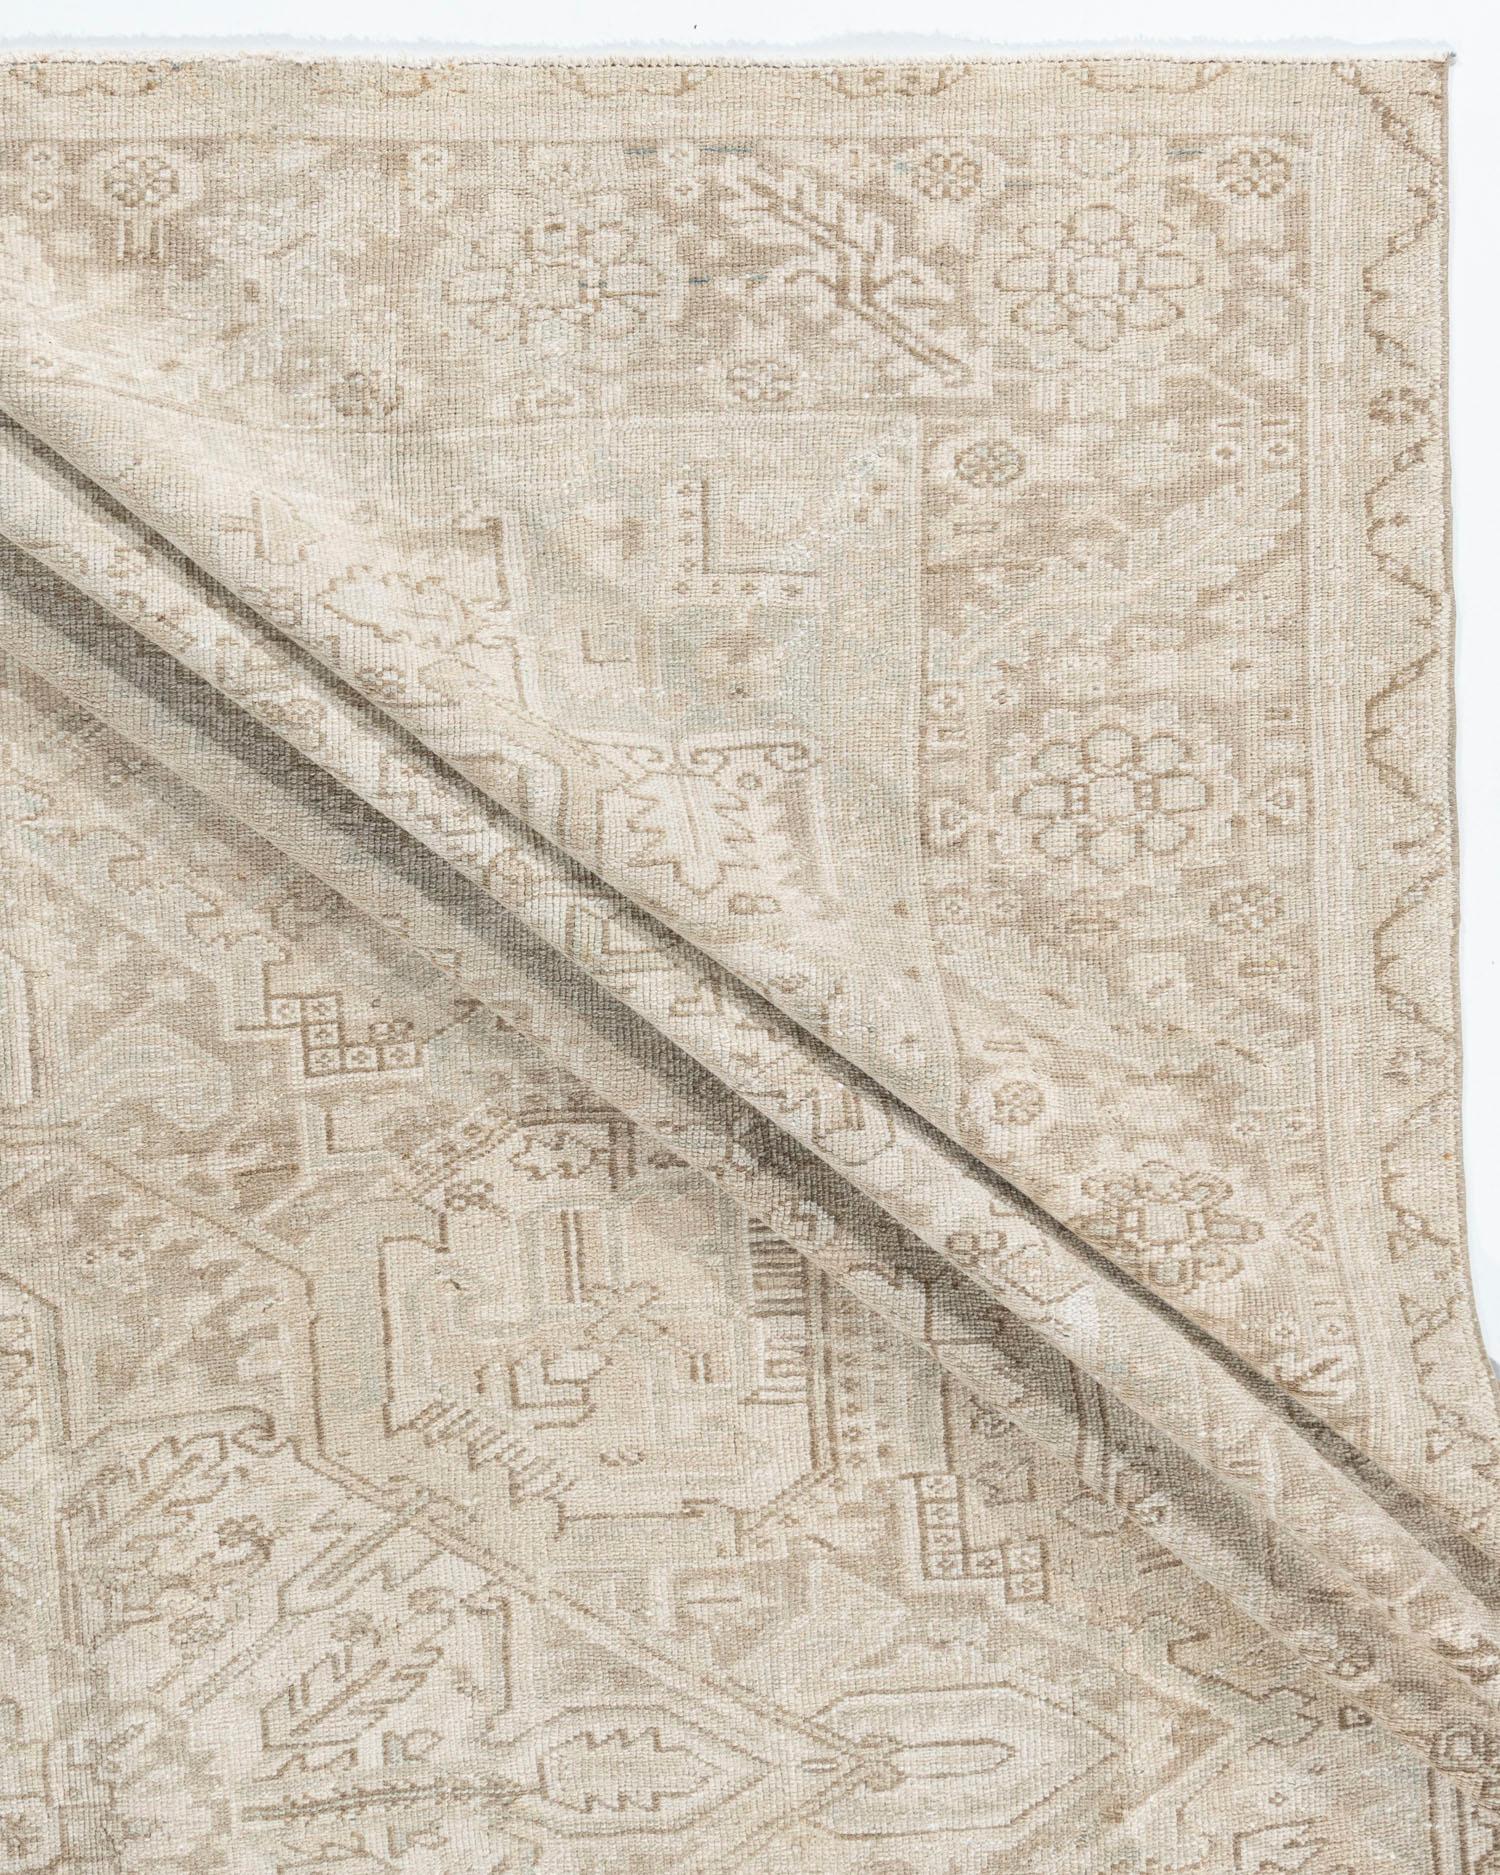 Ancien tapis Persan Heriz 10'8 X 13'5. Le district de Heriz, dans le nord-ouest de la Perse, tisse des tapis depuis plus d'un siècle, avec des motifs géométriques et des tonalités allant du doux au saturé. Les dispositions en médaillon sont de loin